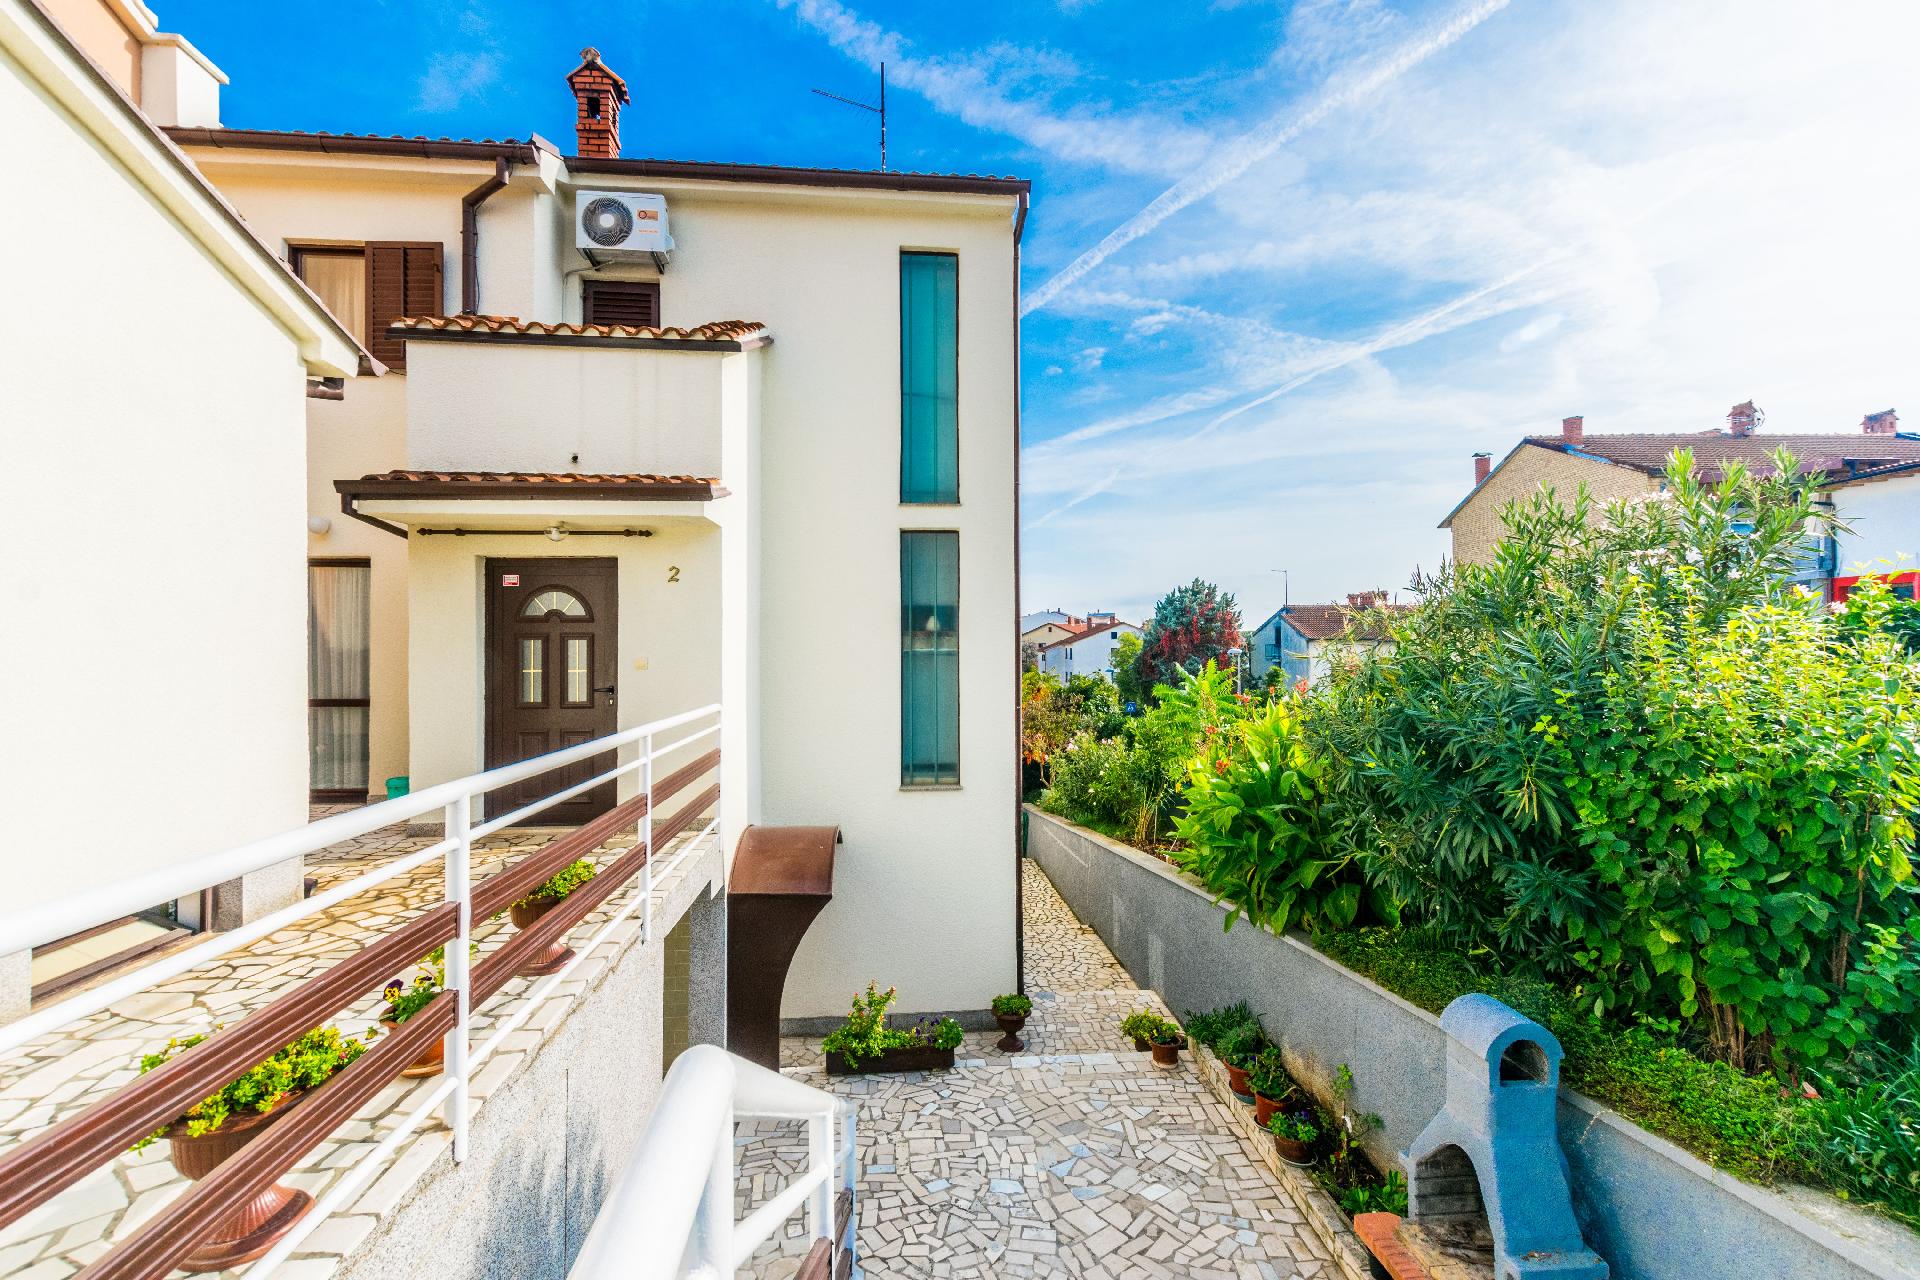 Ferienwohnung für 4 Personen ca. 60 m² i  in Istrien